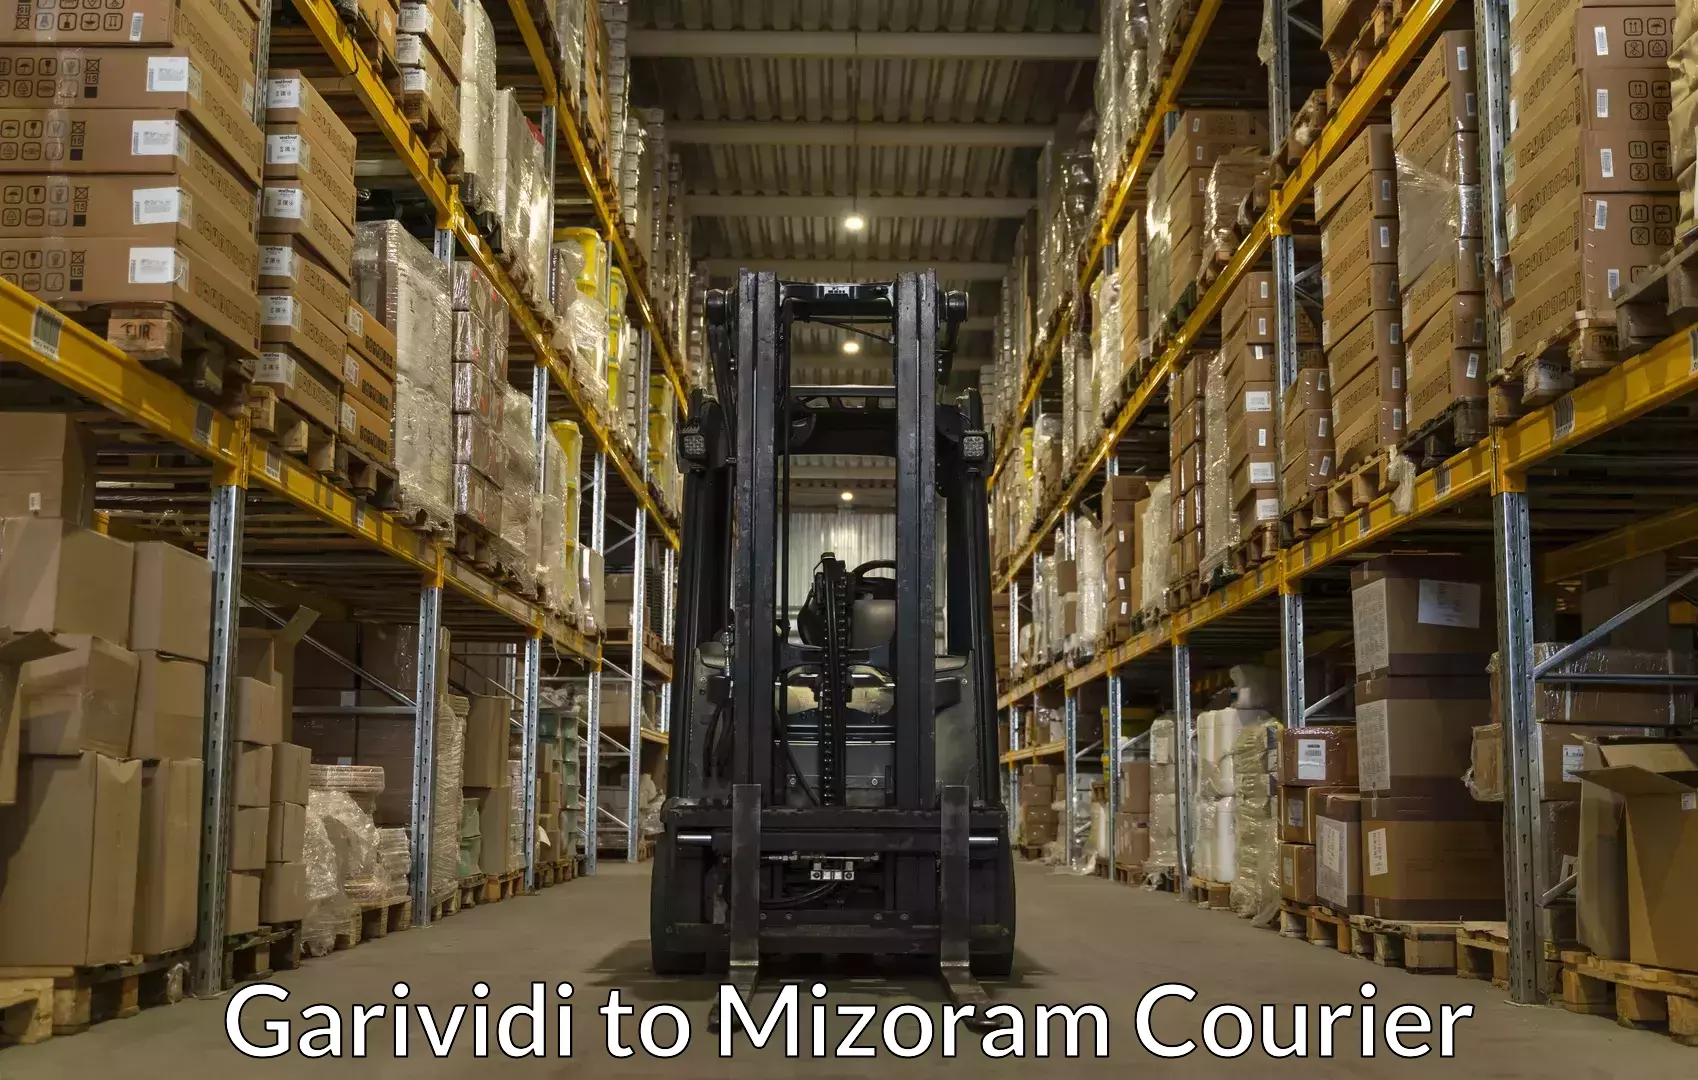 Moving and packing experts Garividi to Mizoram